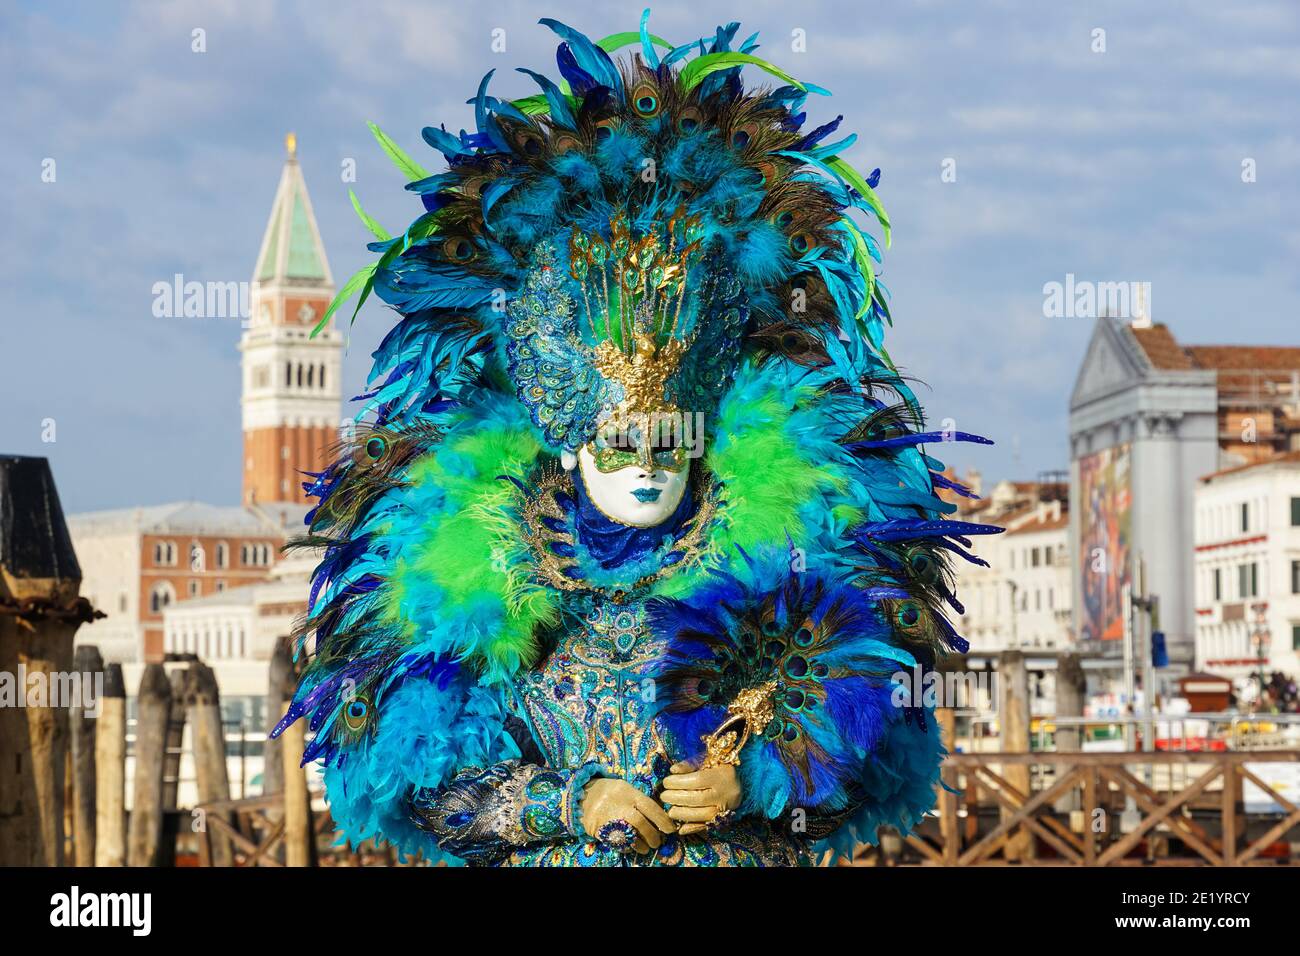 Femme habillée en costume traditionnel décoré de plumes et masque peint pendant le carnaval de Venise avec le Campanile de St Marc derrière Venise Italie Banque D'Images